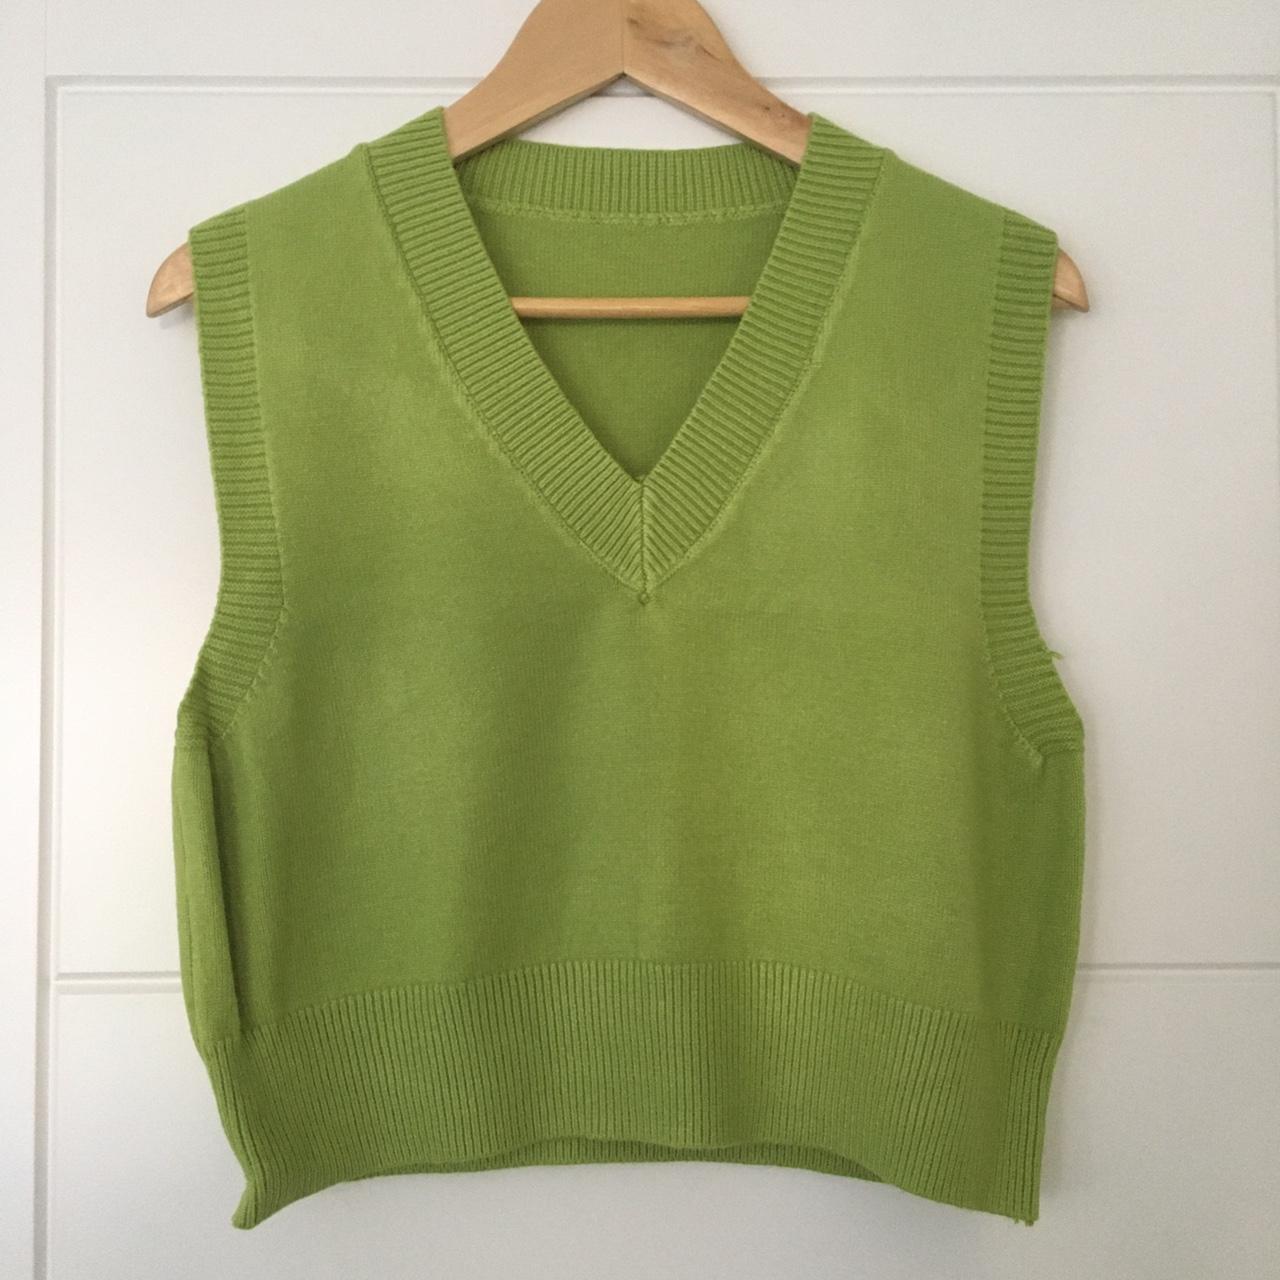 Plain olive green sweater vest v-neck knitwear... - Depop